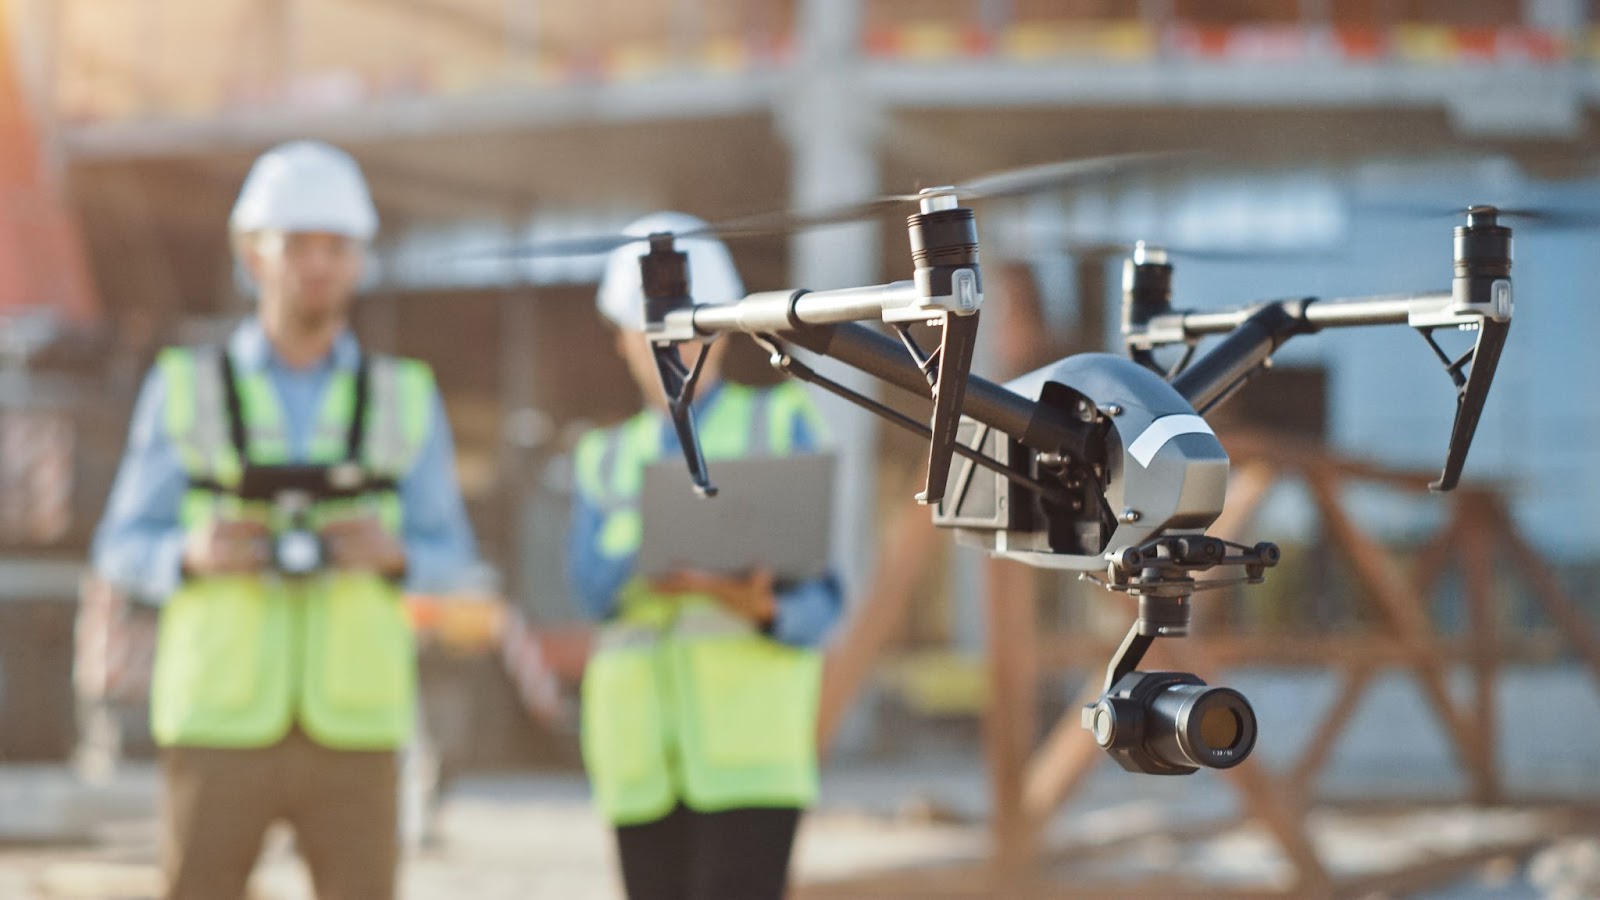 Autonomous drone at a construction site